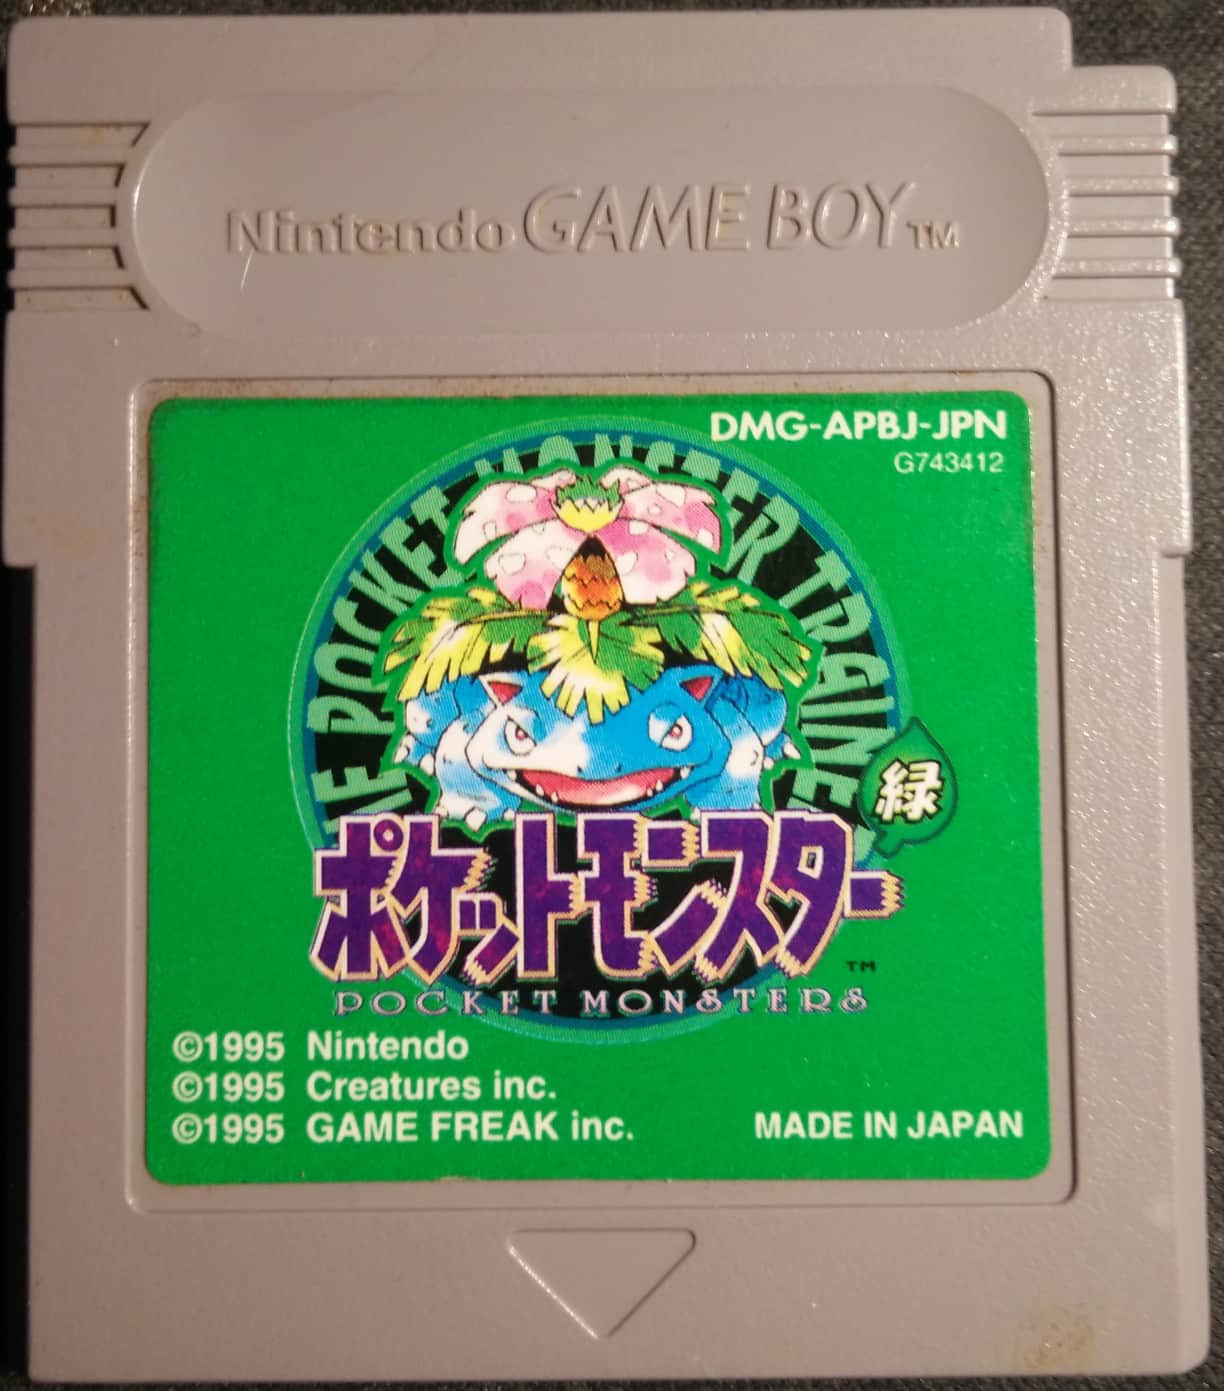 Pocket Monsters - Midori (Japan) (Rev 1) (SGB Enhanced) - Game Boy